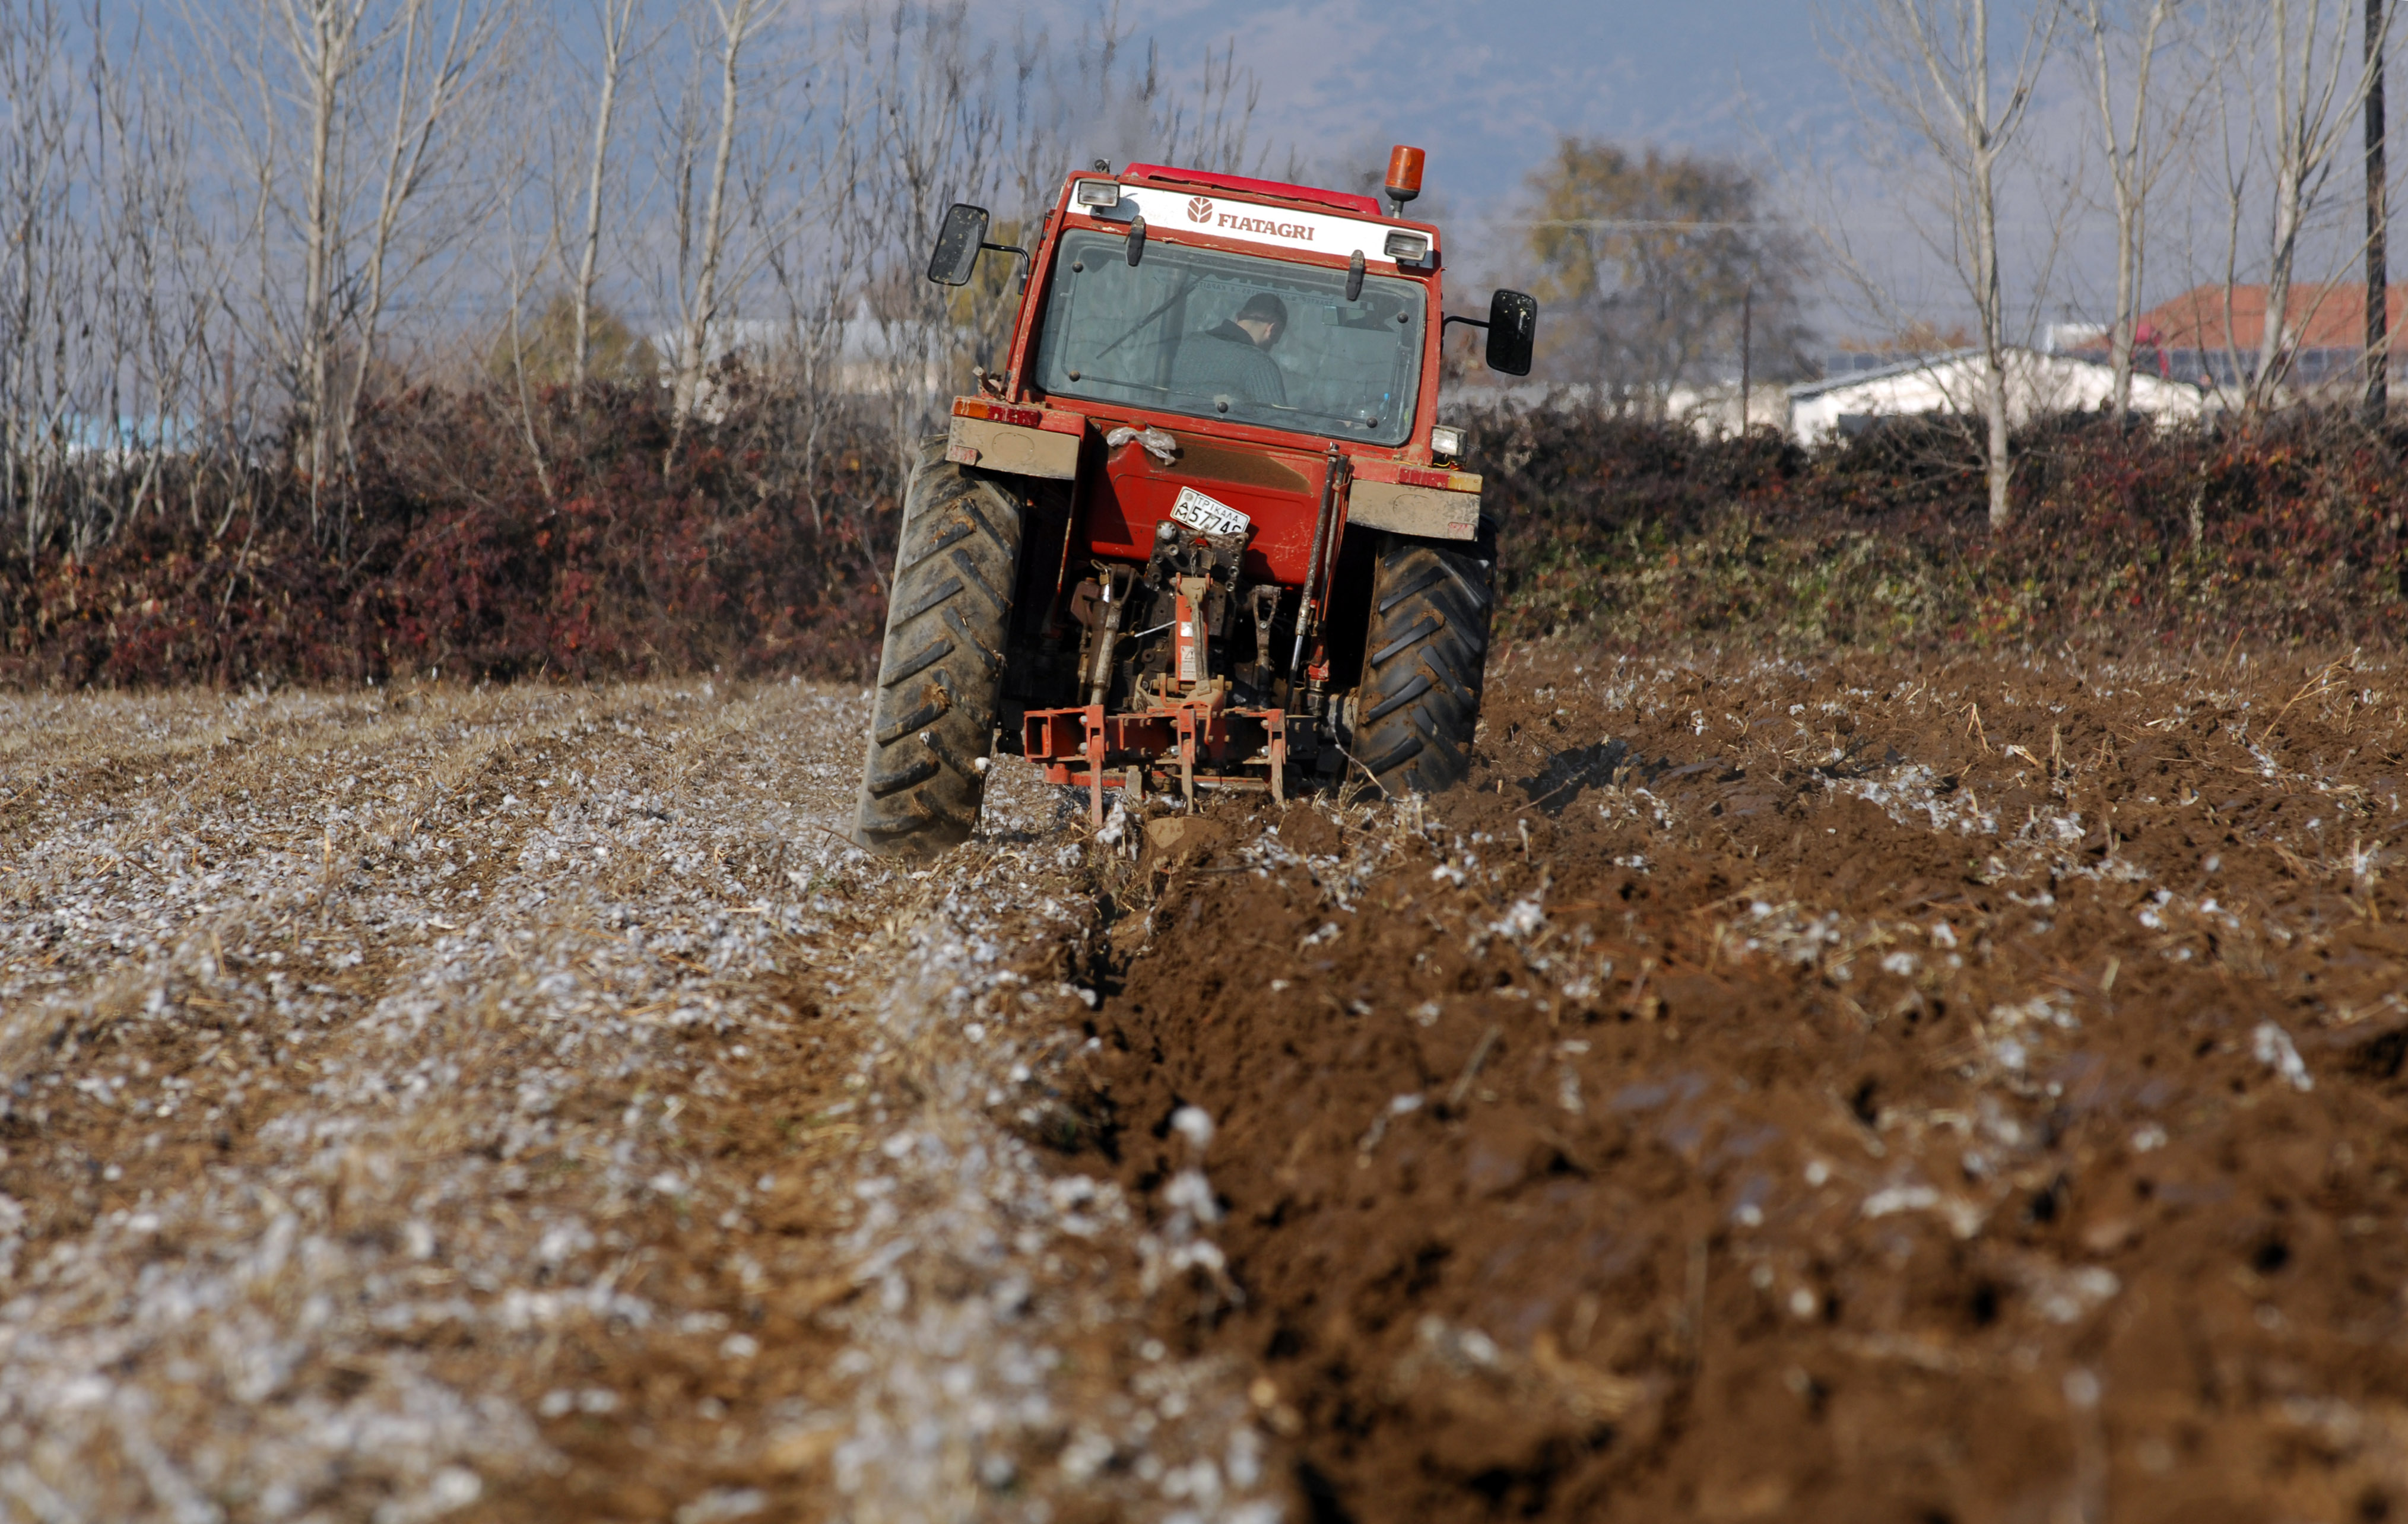 Χαρδούβελης: Πρέπει να ζητήσουμε πίσω τις αγροτικές ενισχύσεις